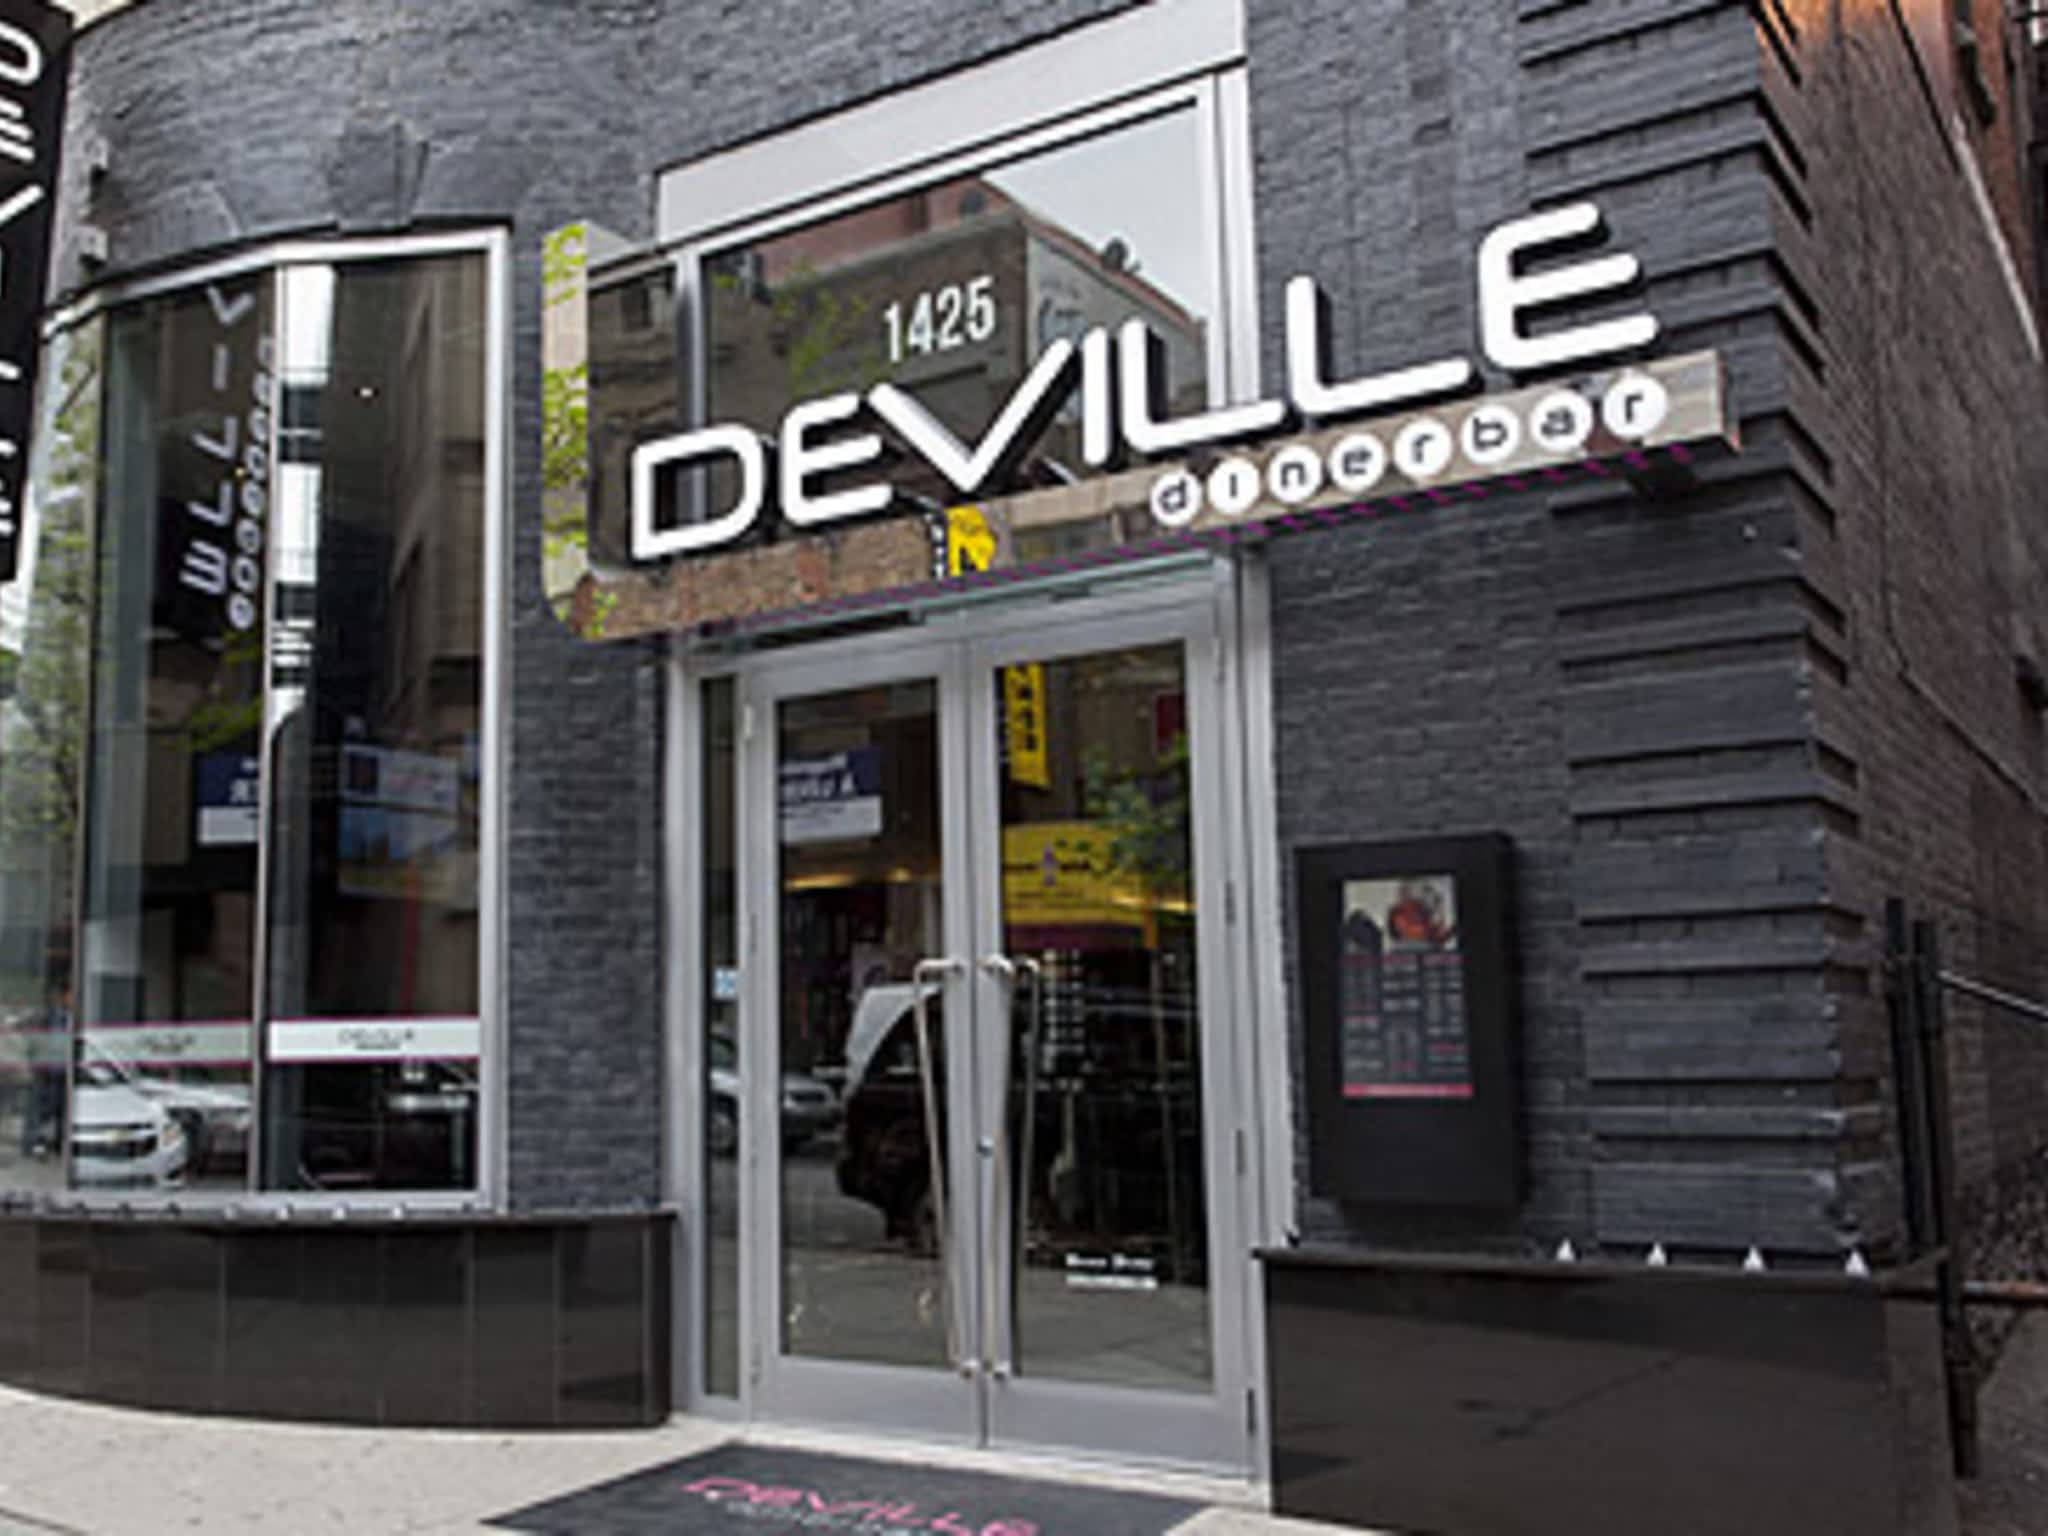 photo Deville Dinerbar